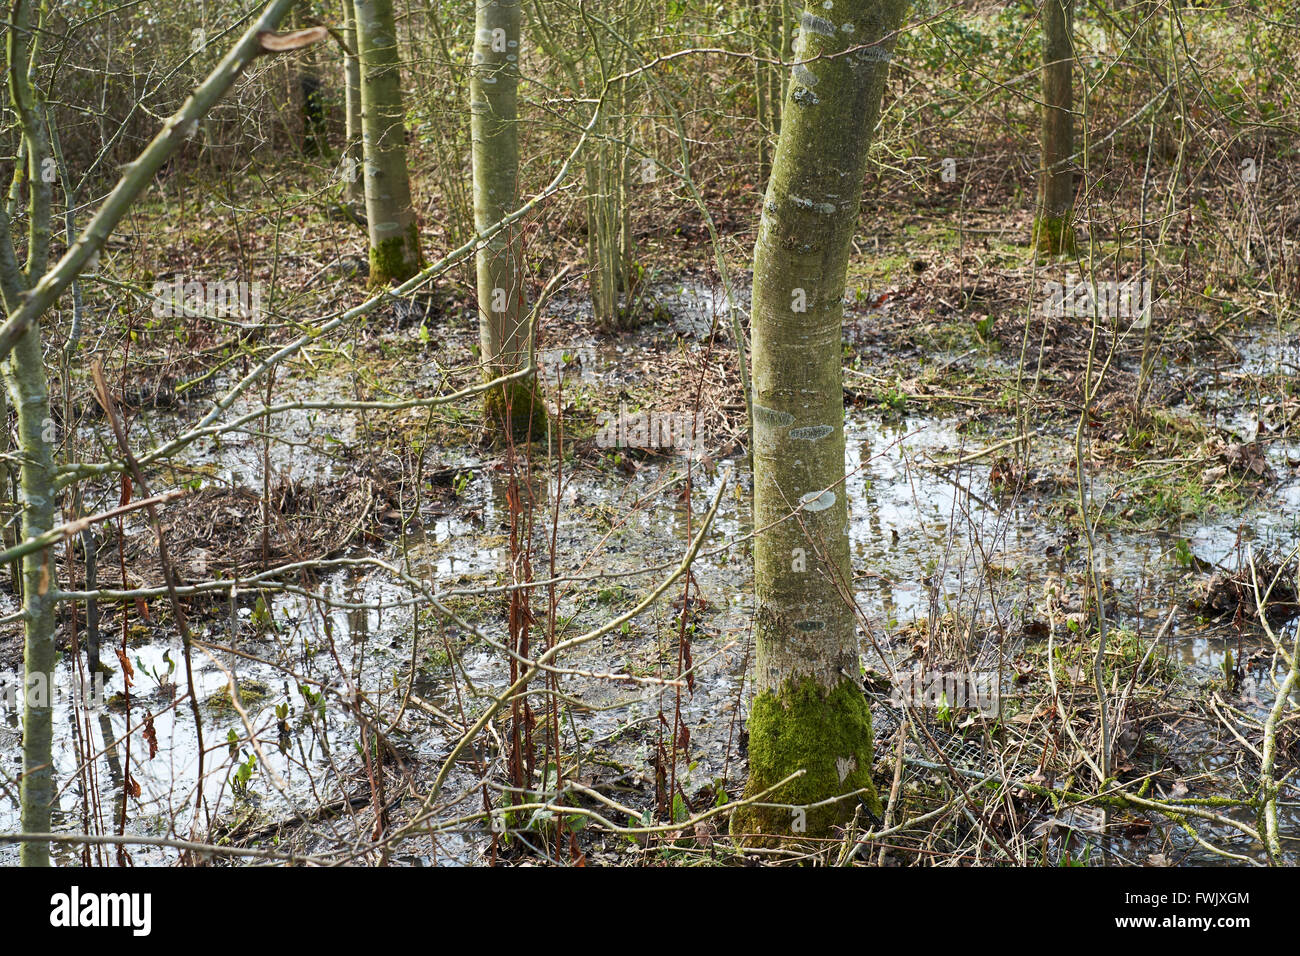 Arbres dans un bosquet agricoles inondés par les eaux de ruissellement des champs voisins. Bedfordshire, Royaume-Uni. Banque D'Images